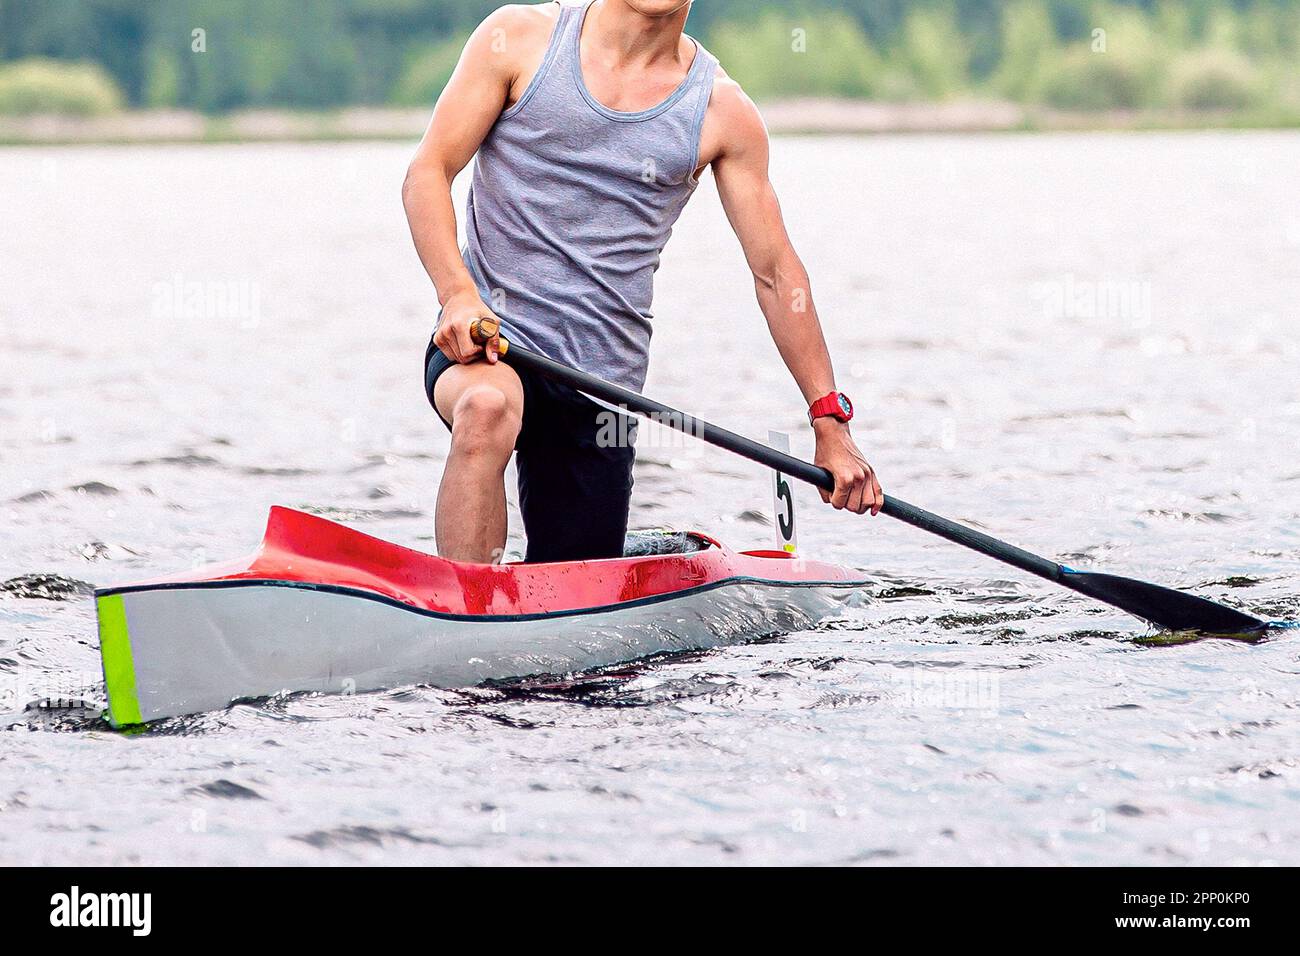 Vorderansicht männlicher Sportler Kanufahrer im Kanu Single, nach der Ziellinie, Paddeln im Wasser, Sommer Outdoor-Sport Stockfoto